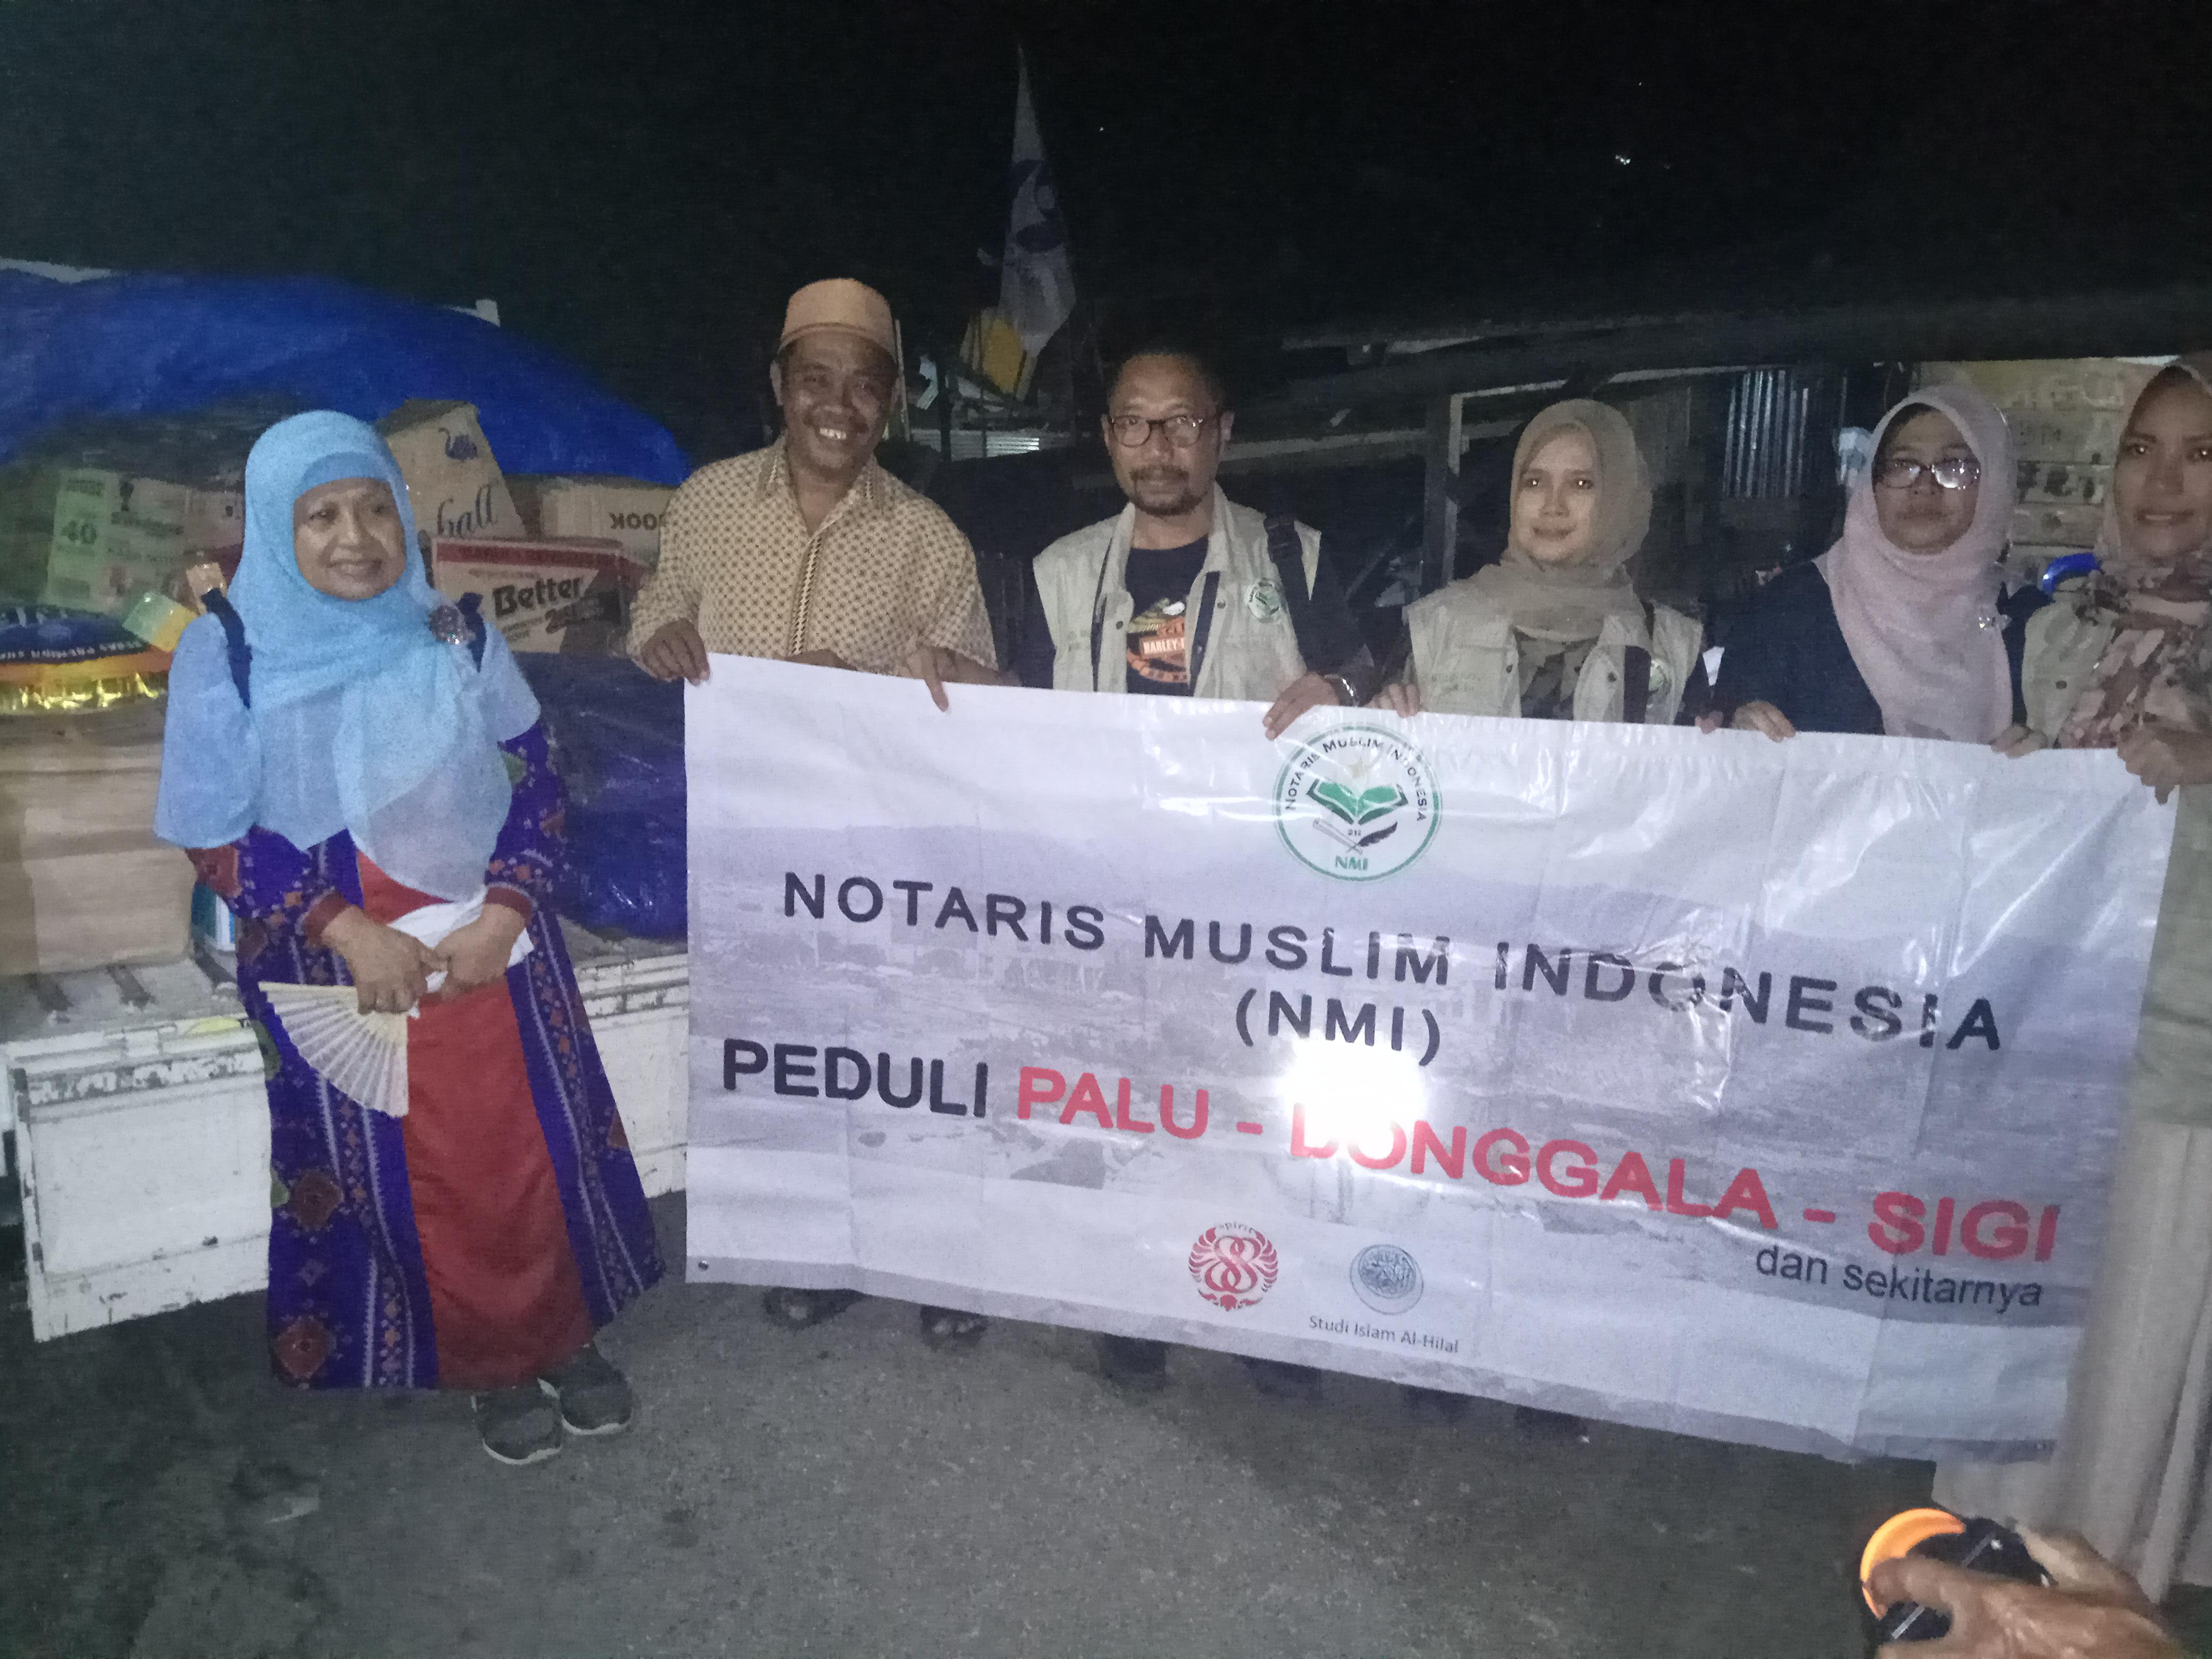 Notaris Muslim Indonesia Terjun ke Wilayah Bencana Palu